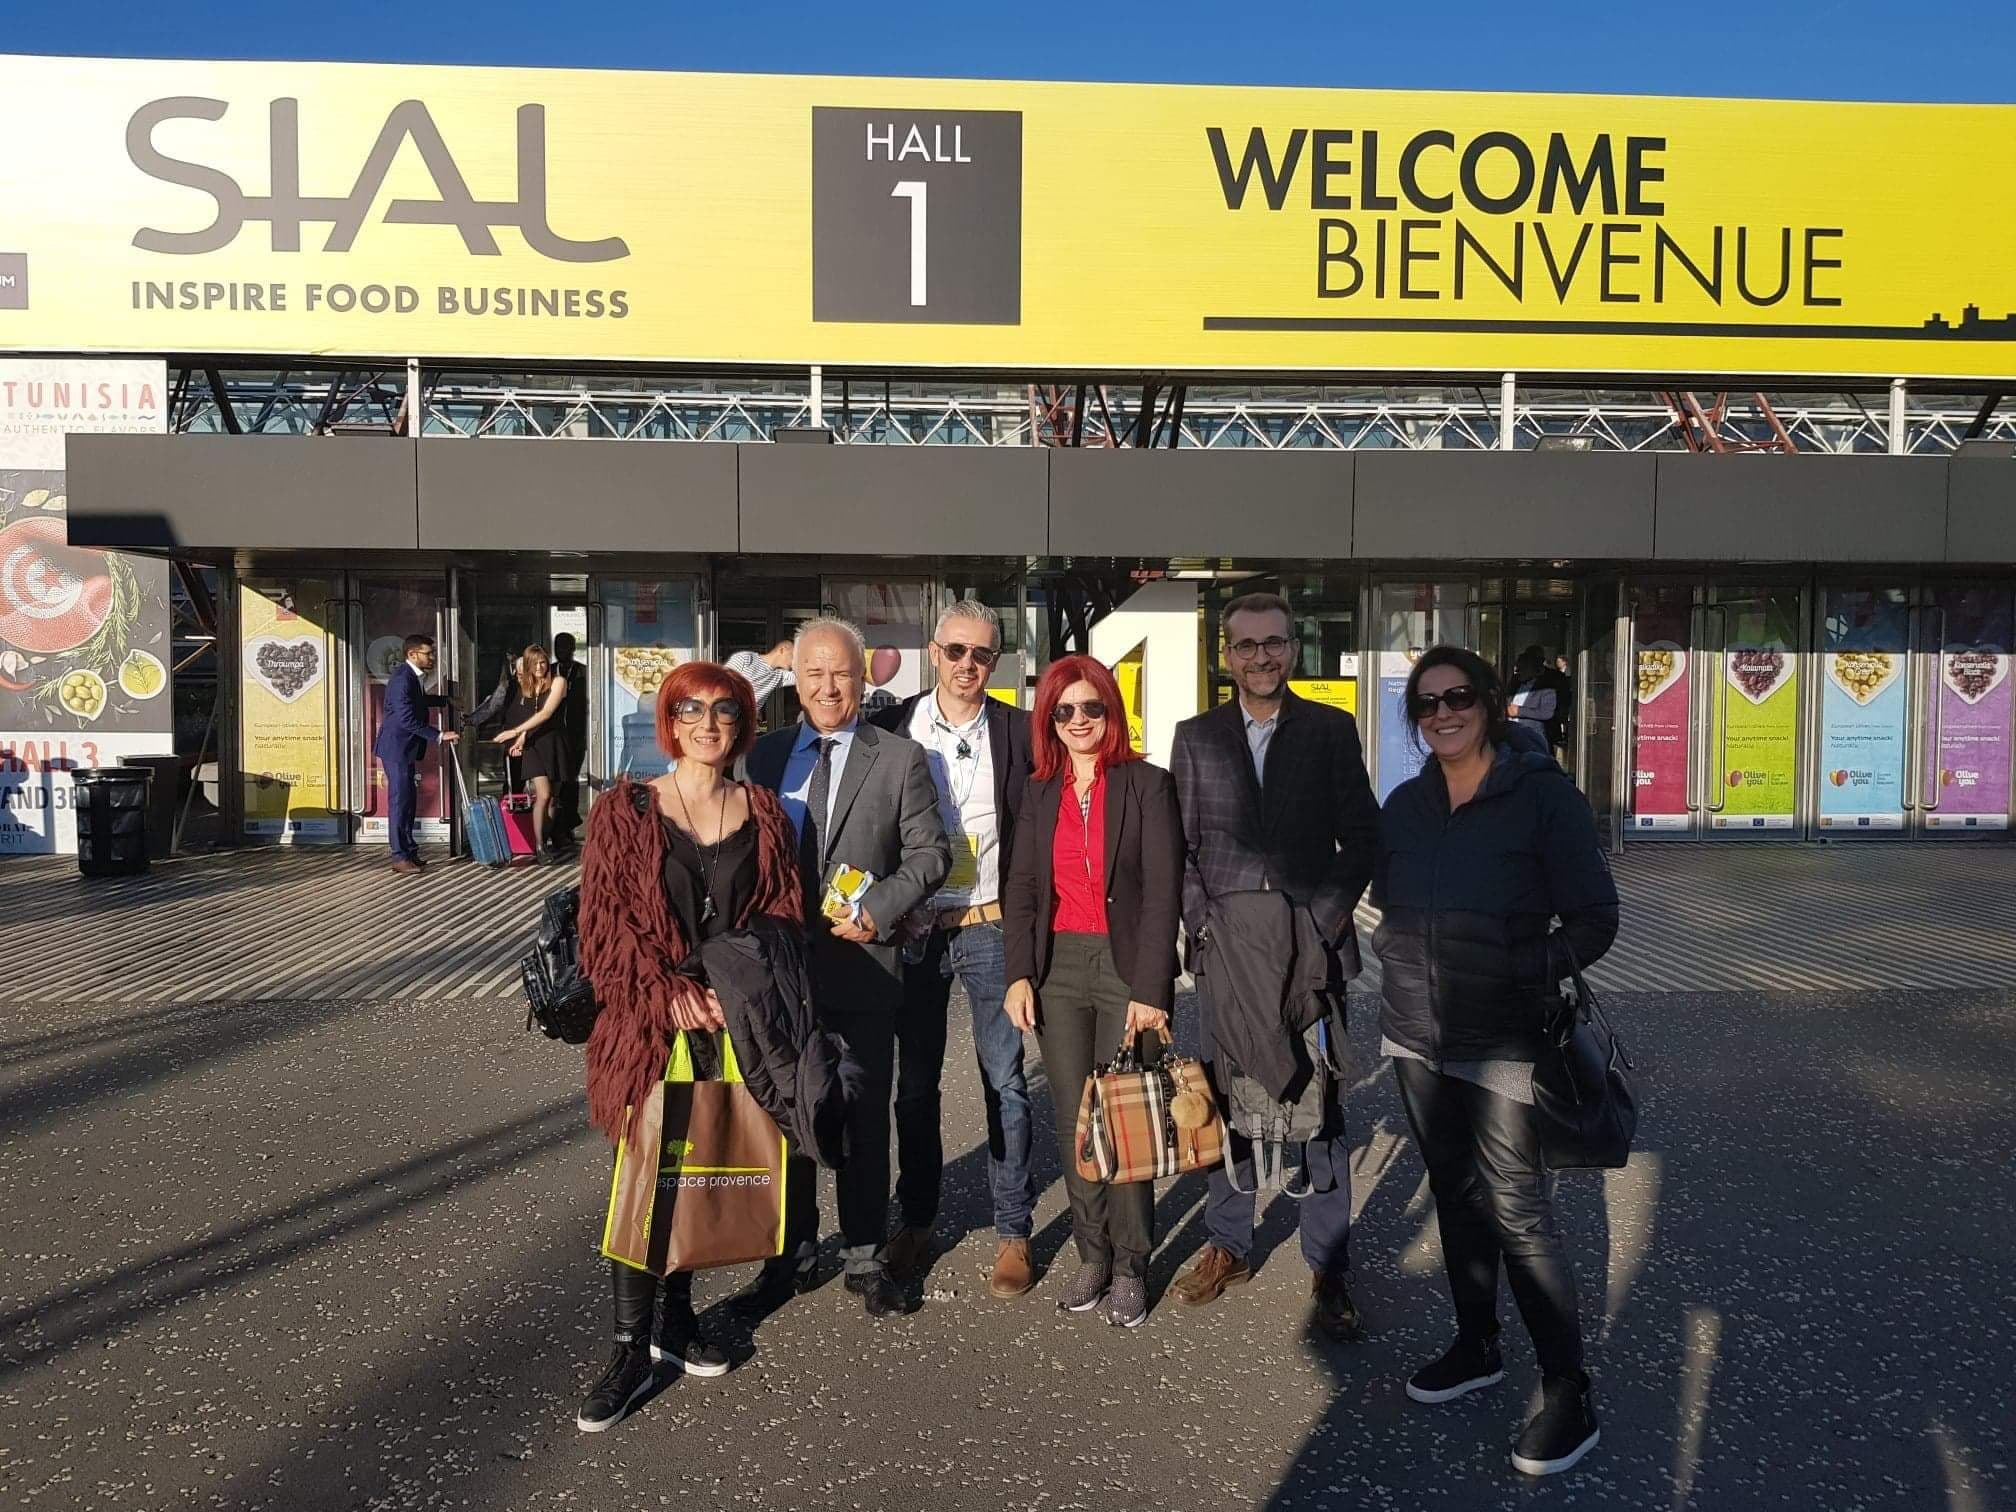 Επιτυχημένη παρουσία του Επιμελητηρίου Λάρισας στην SIAL 2018 στο Παρίσι